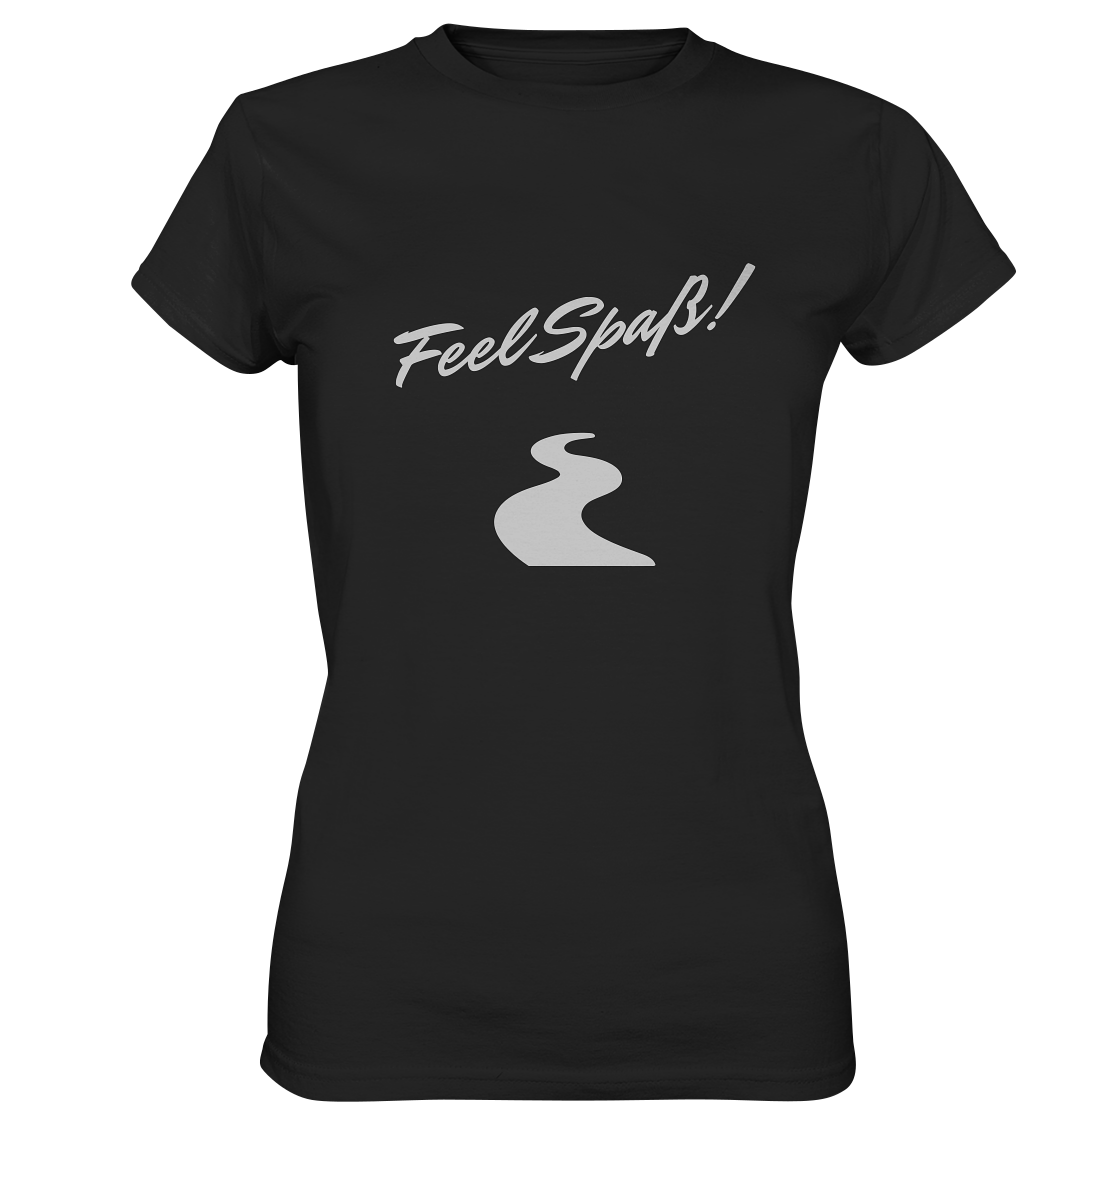 T-Shirt Damen, Rundhals, mit Aufdruck "Feel Spaß!" und kurviger Straße, schwarz